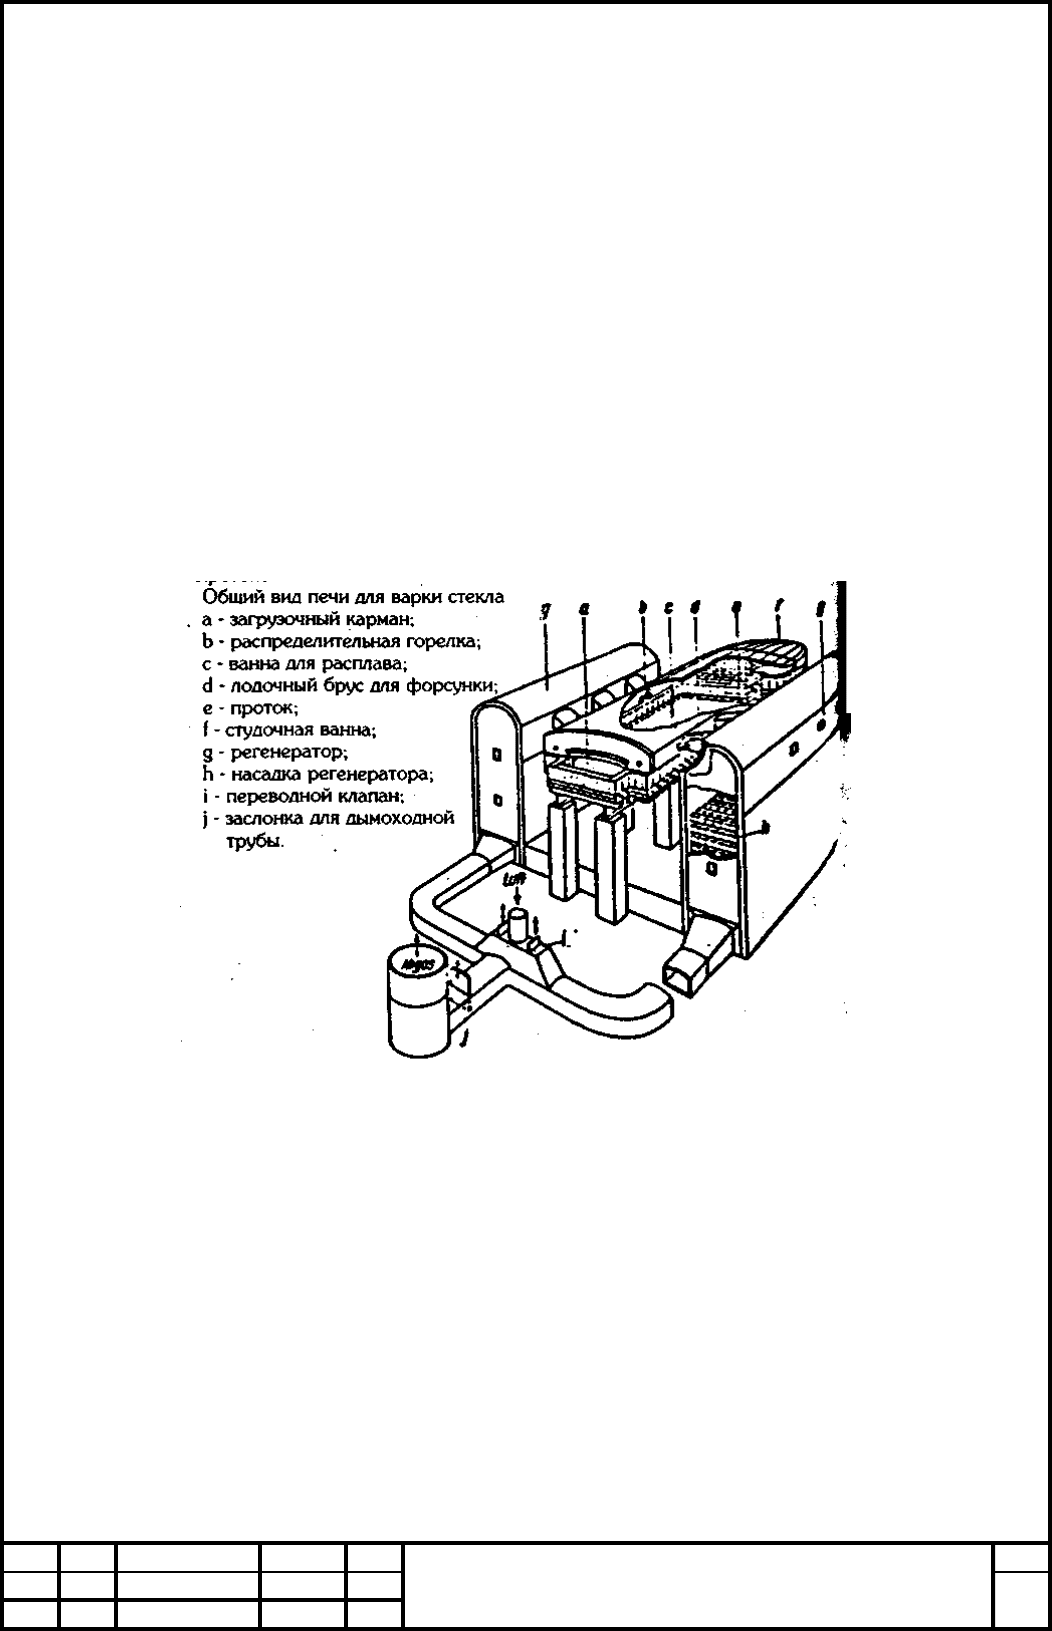 Реферат: Система управления стекловаренной печью